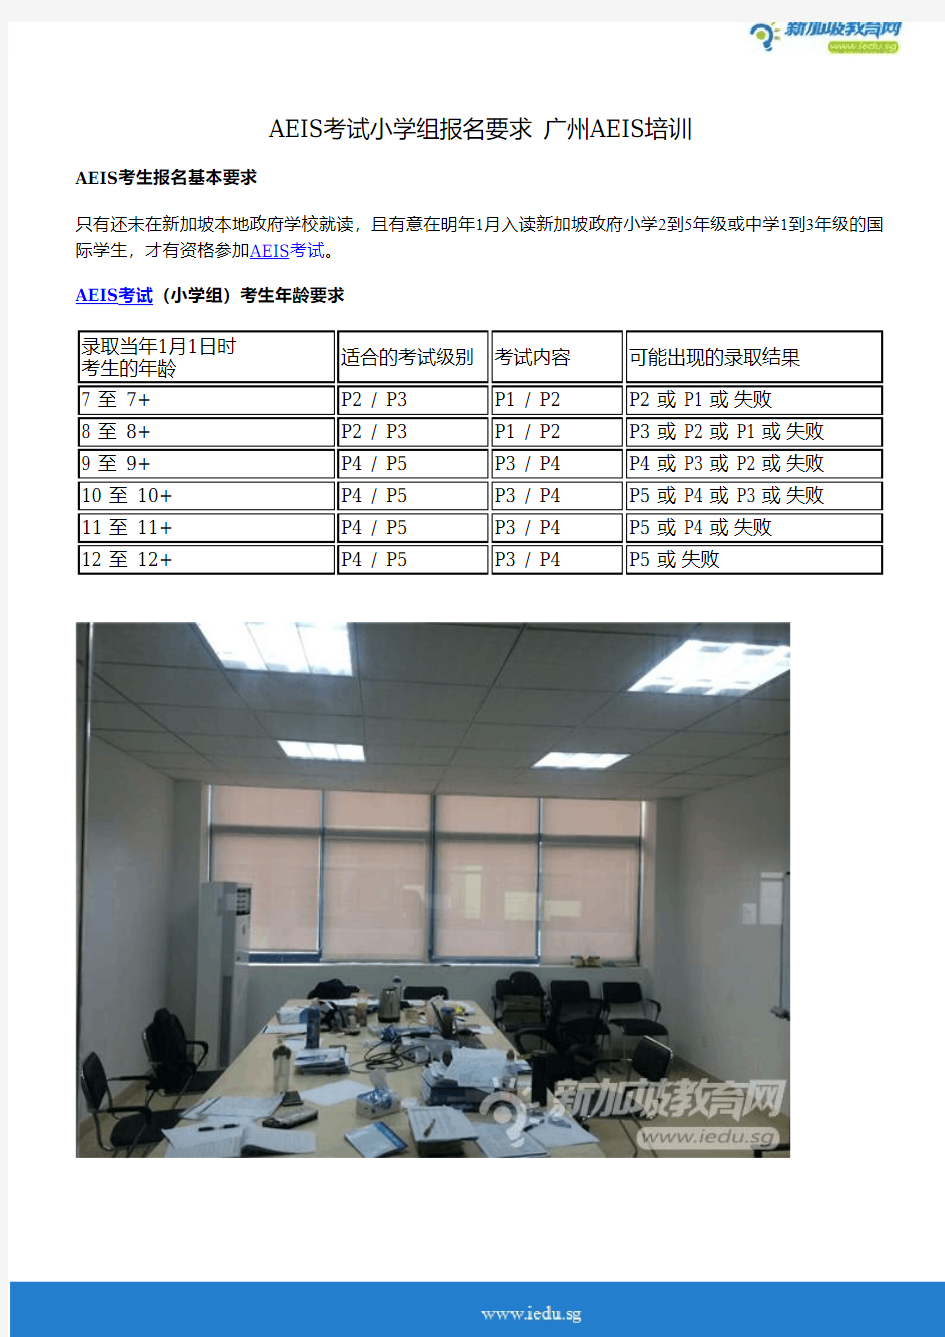 AEIS考试小学组报名要求 广州AEIS培训